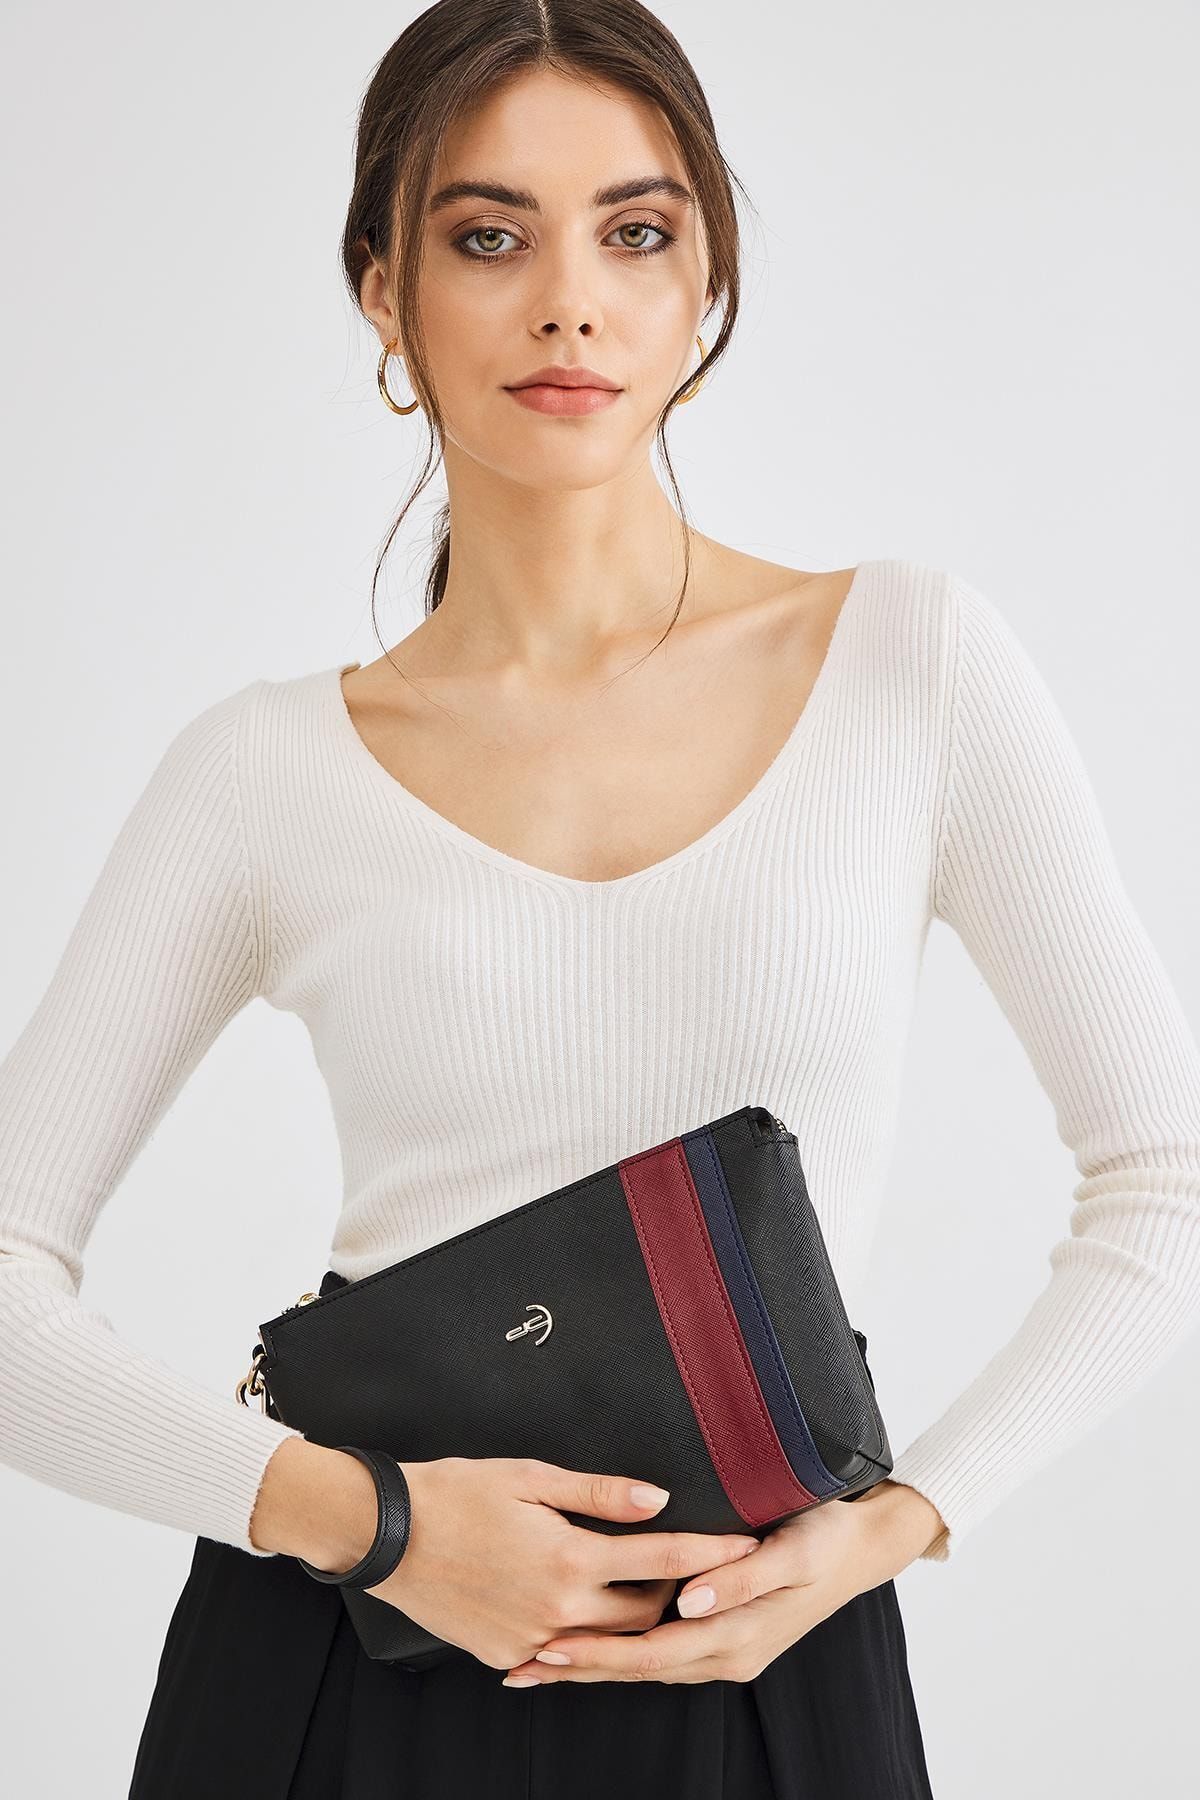 Deri Company Kadın Basic Clutch Çanta Düz Desenli Şeritli Logolu Siyah Bordo (4006s-bl) 214012